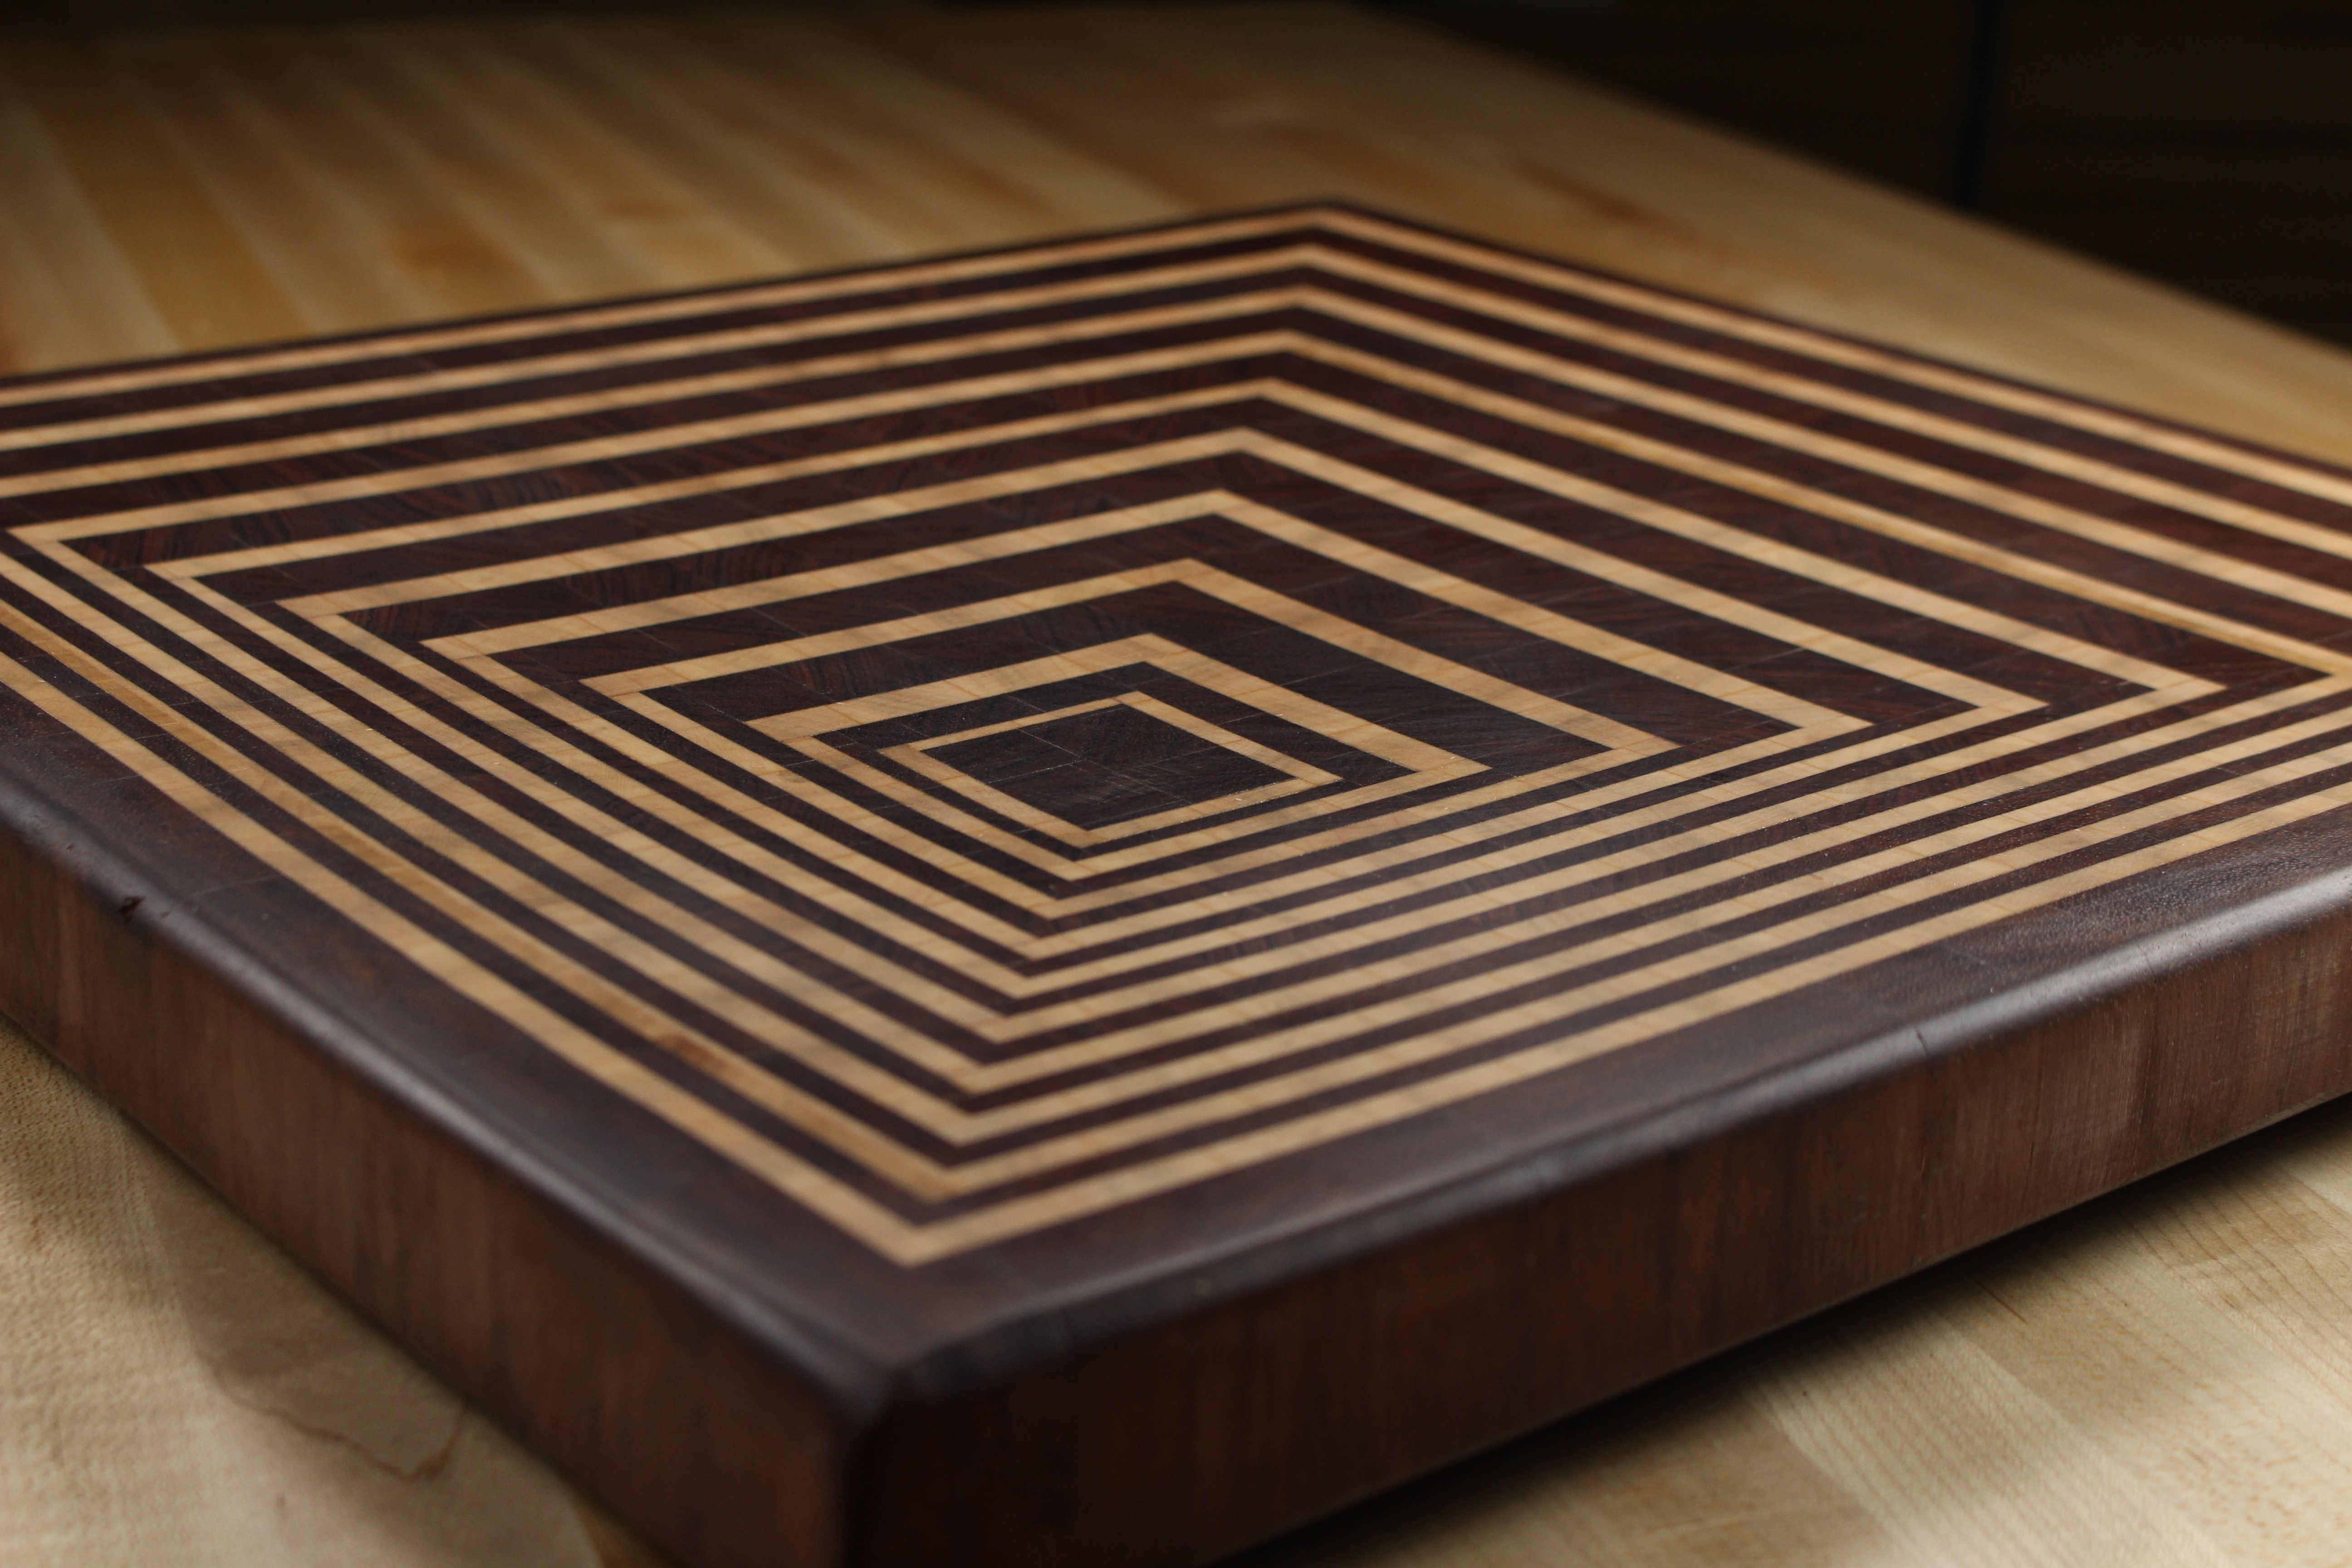 wood cutting board plans